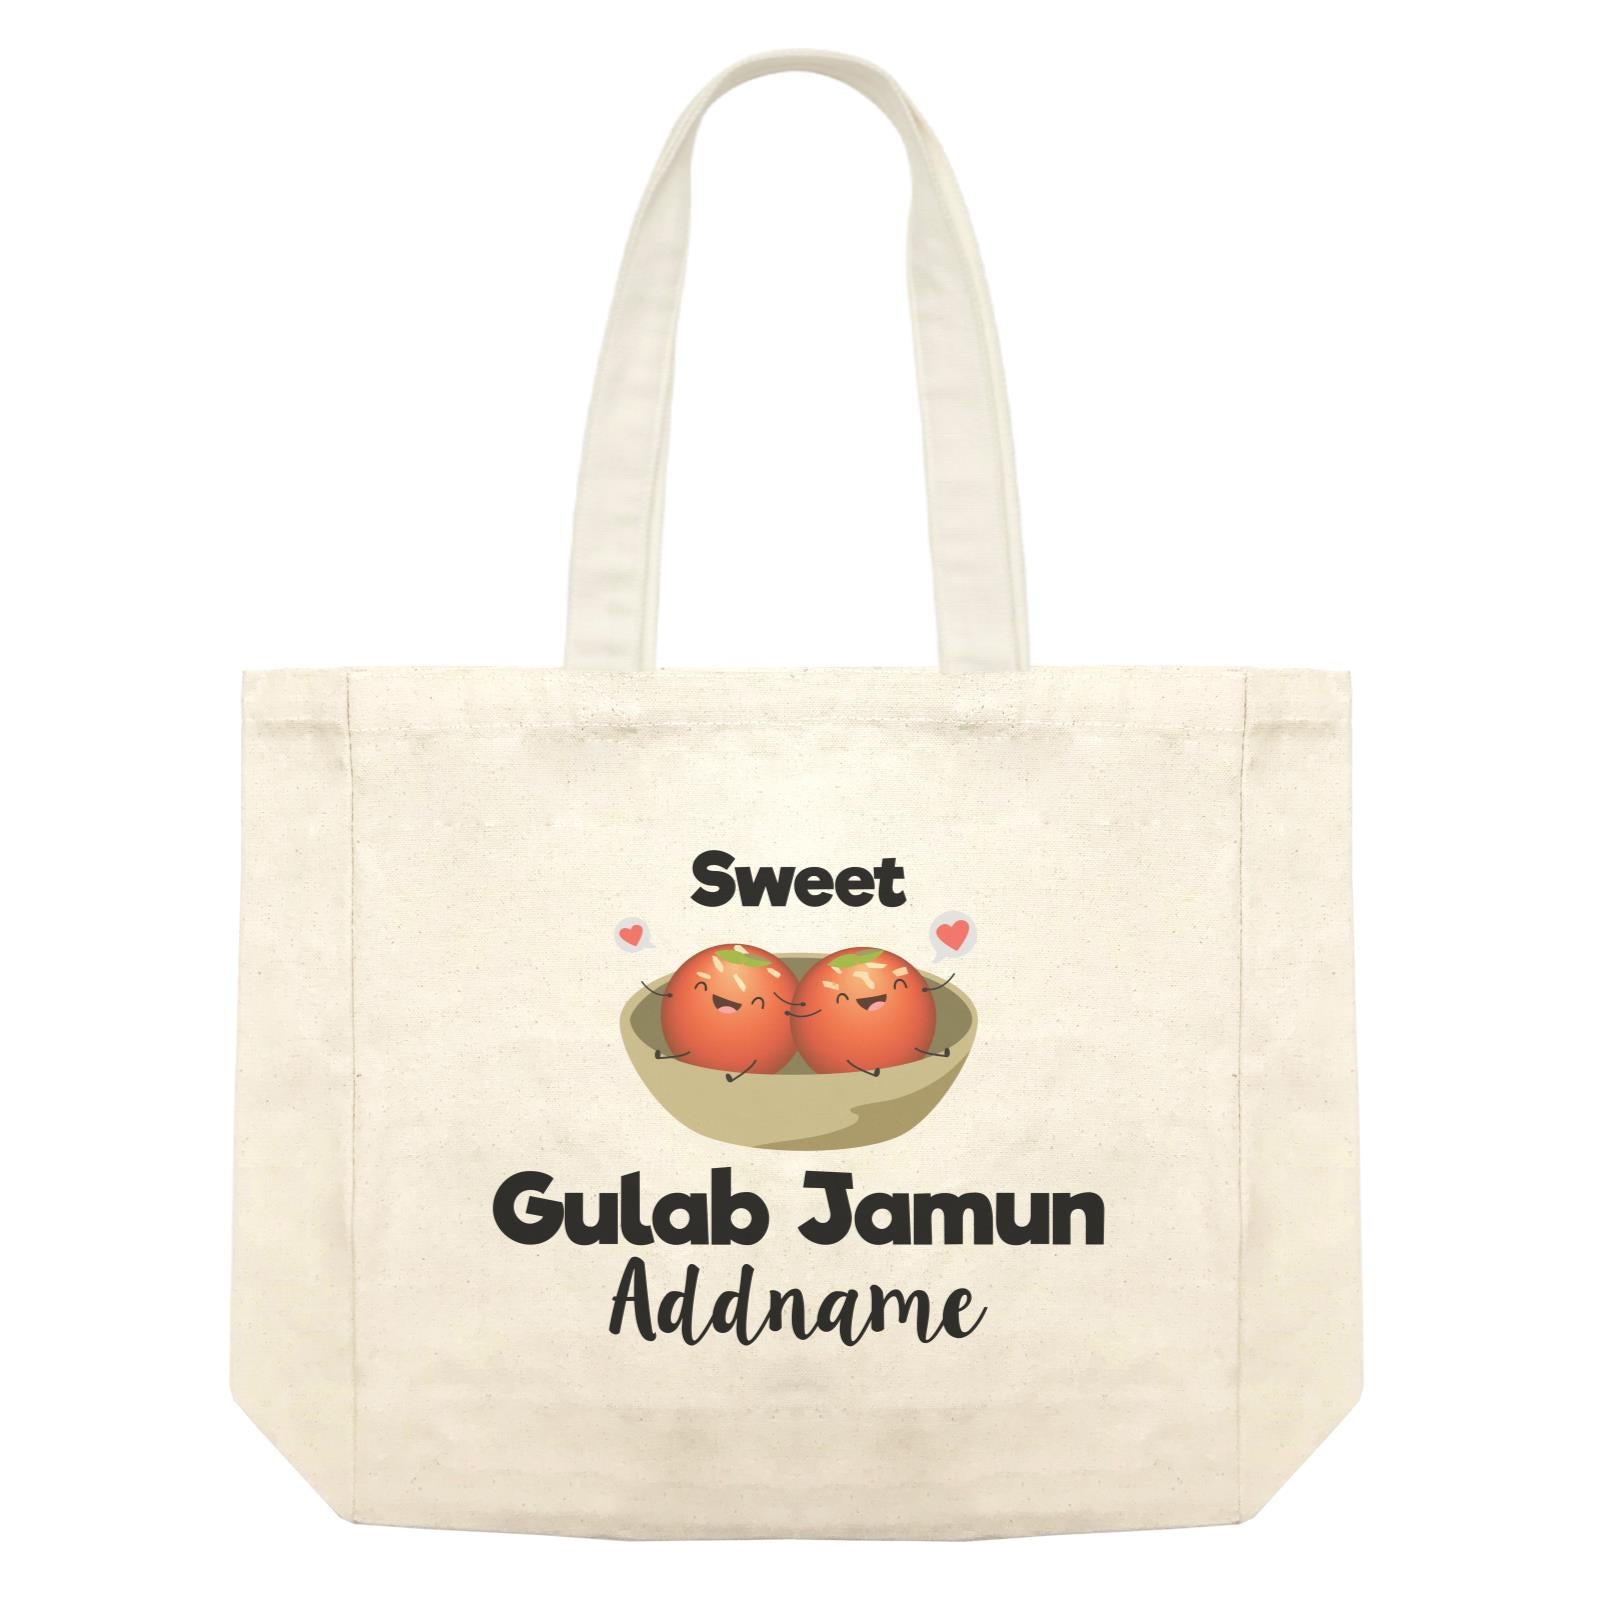 Sweet Gulab Jamun Addname Shopping Bag